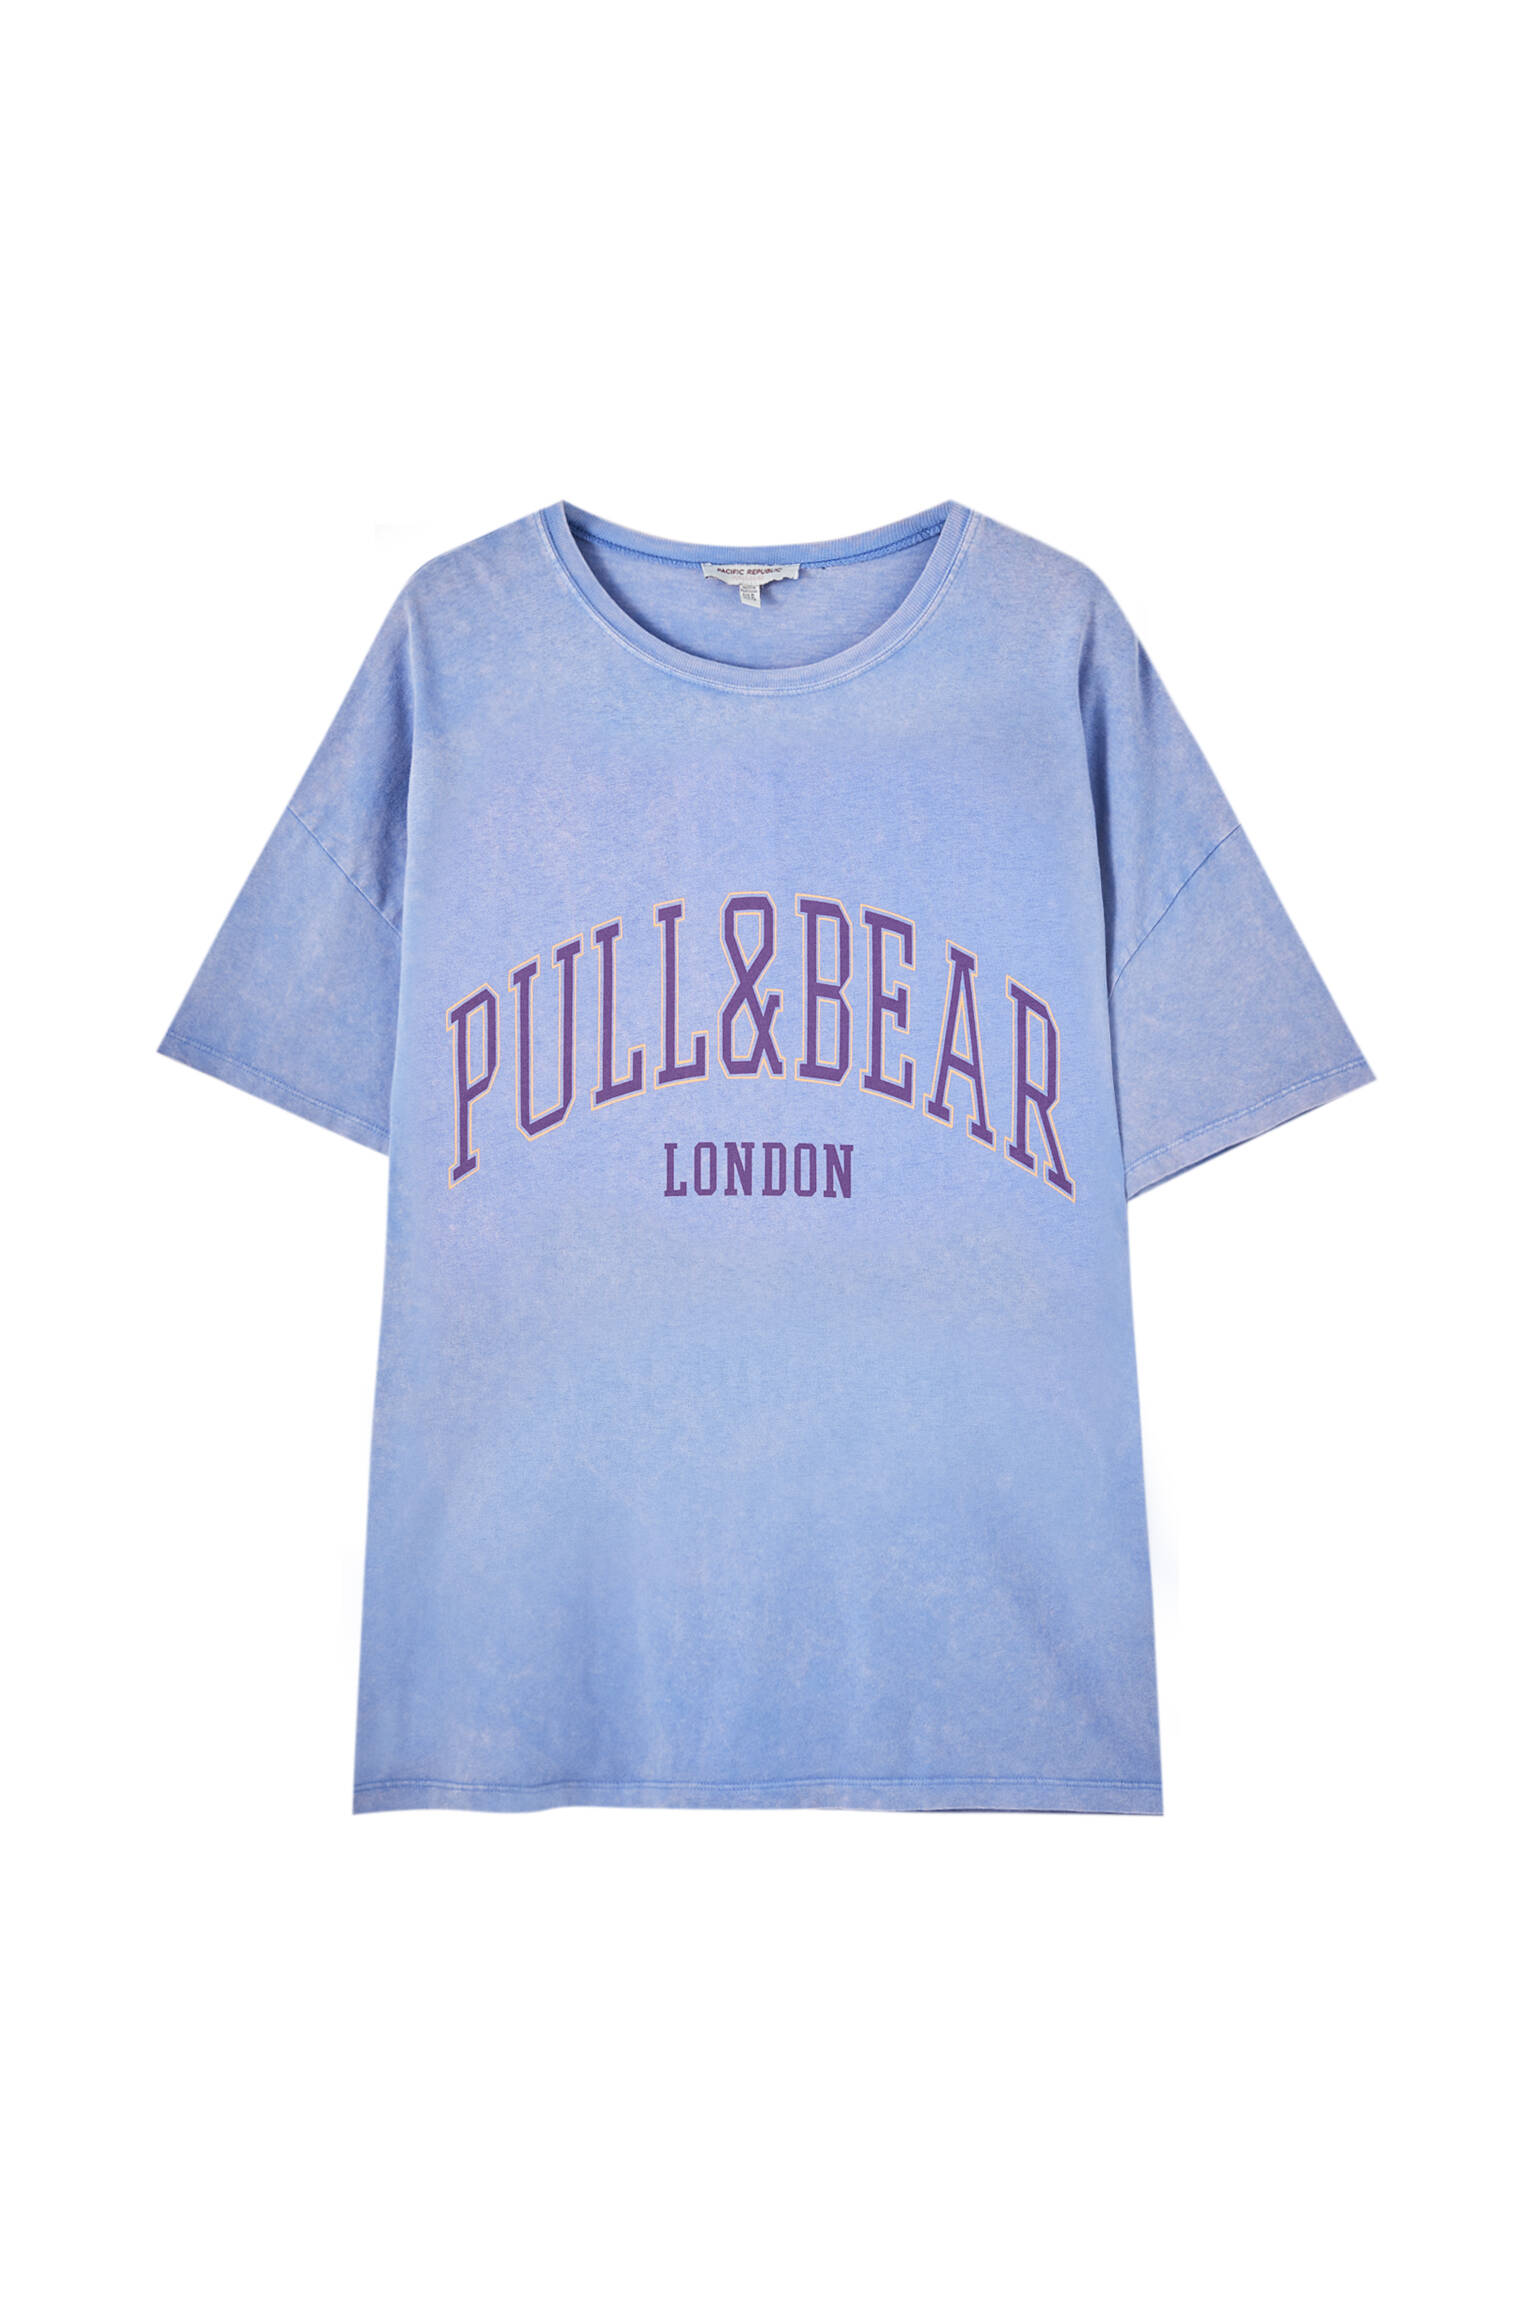 Pull&bear Femme T-shirt 100 % Coton à Col Rond Et Manches Courtes, Avec Logo Pull&bear Et Inscription London Contrastante Sur La Poitrine. Indigo DÉlavÉ M